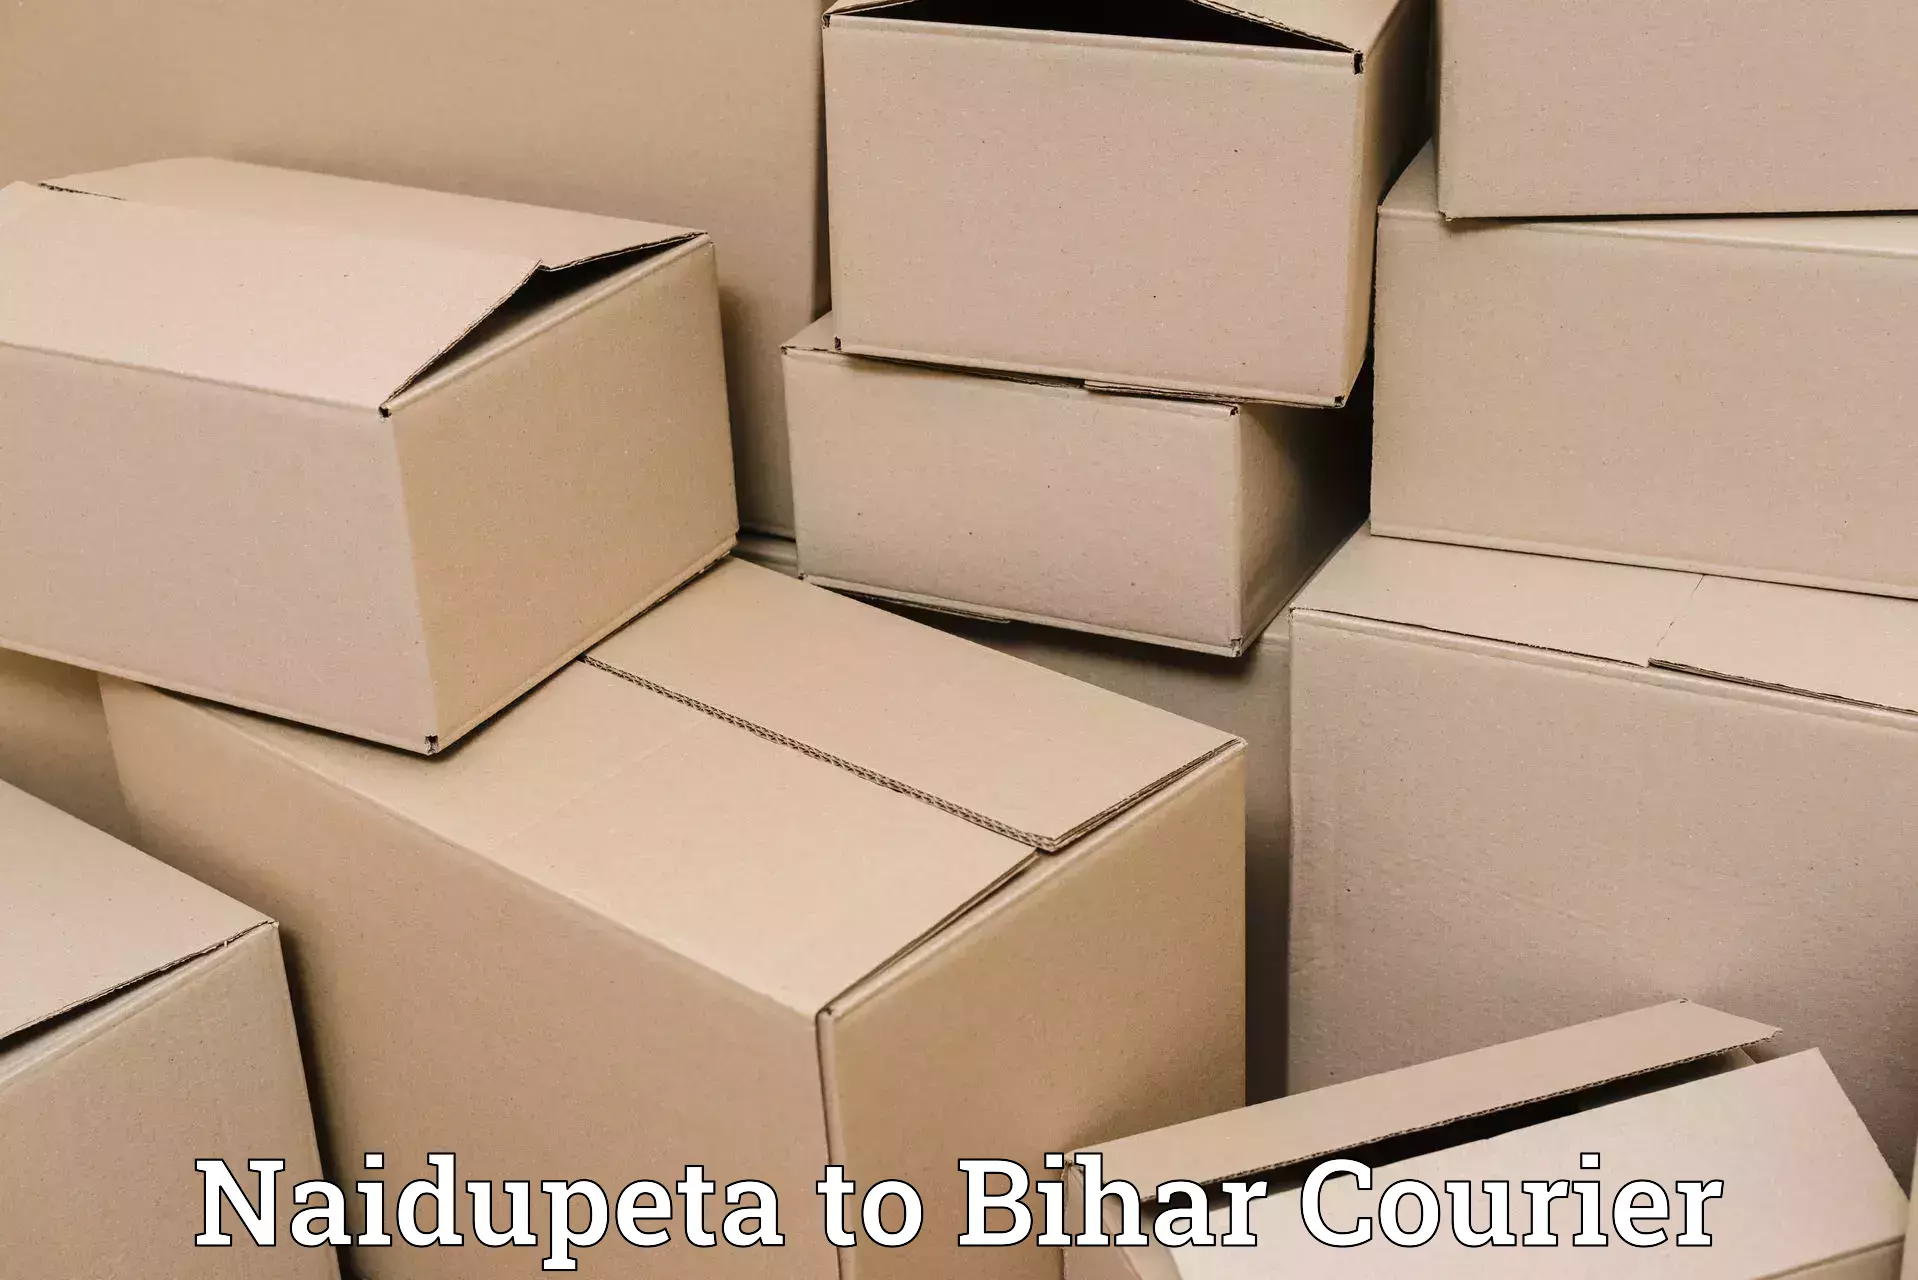 User-friendly courier app Naidupeta to Benipatti